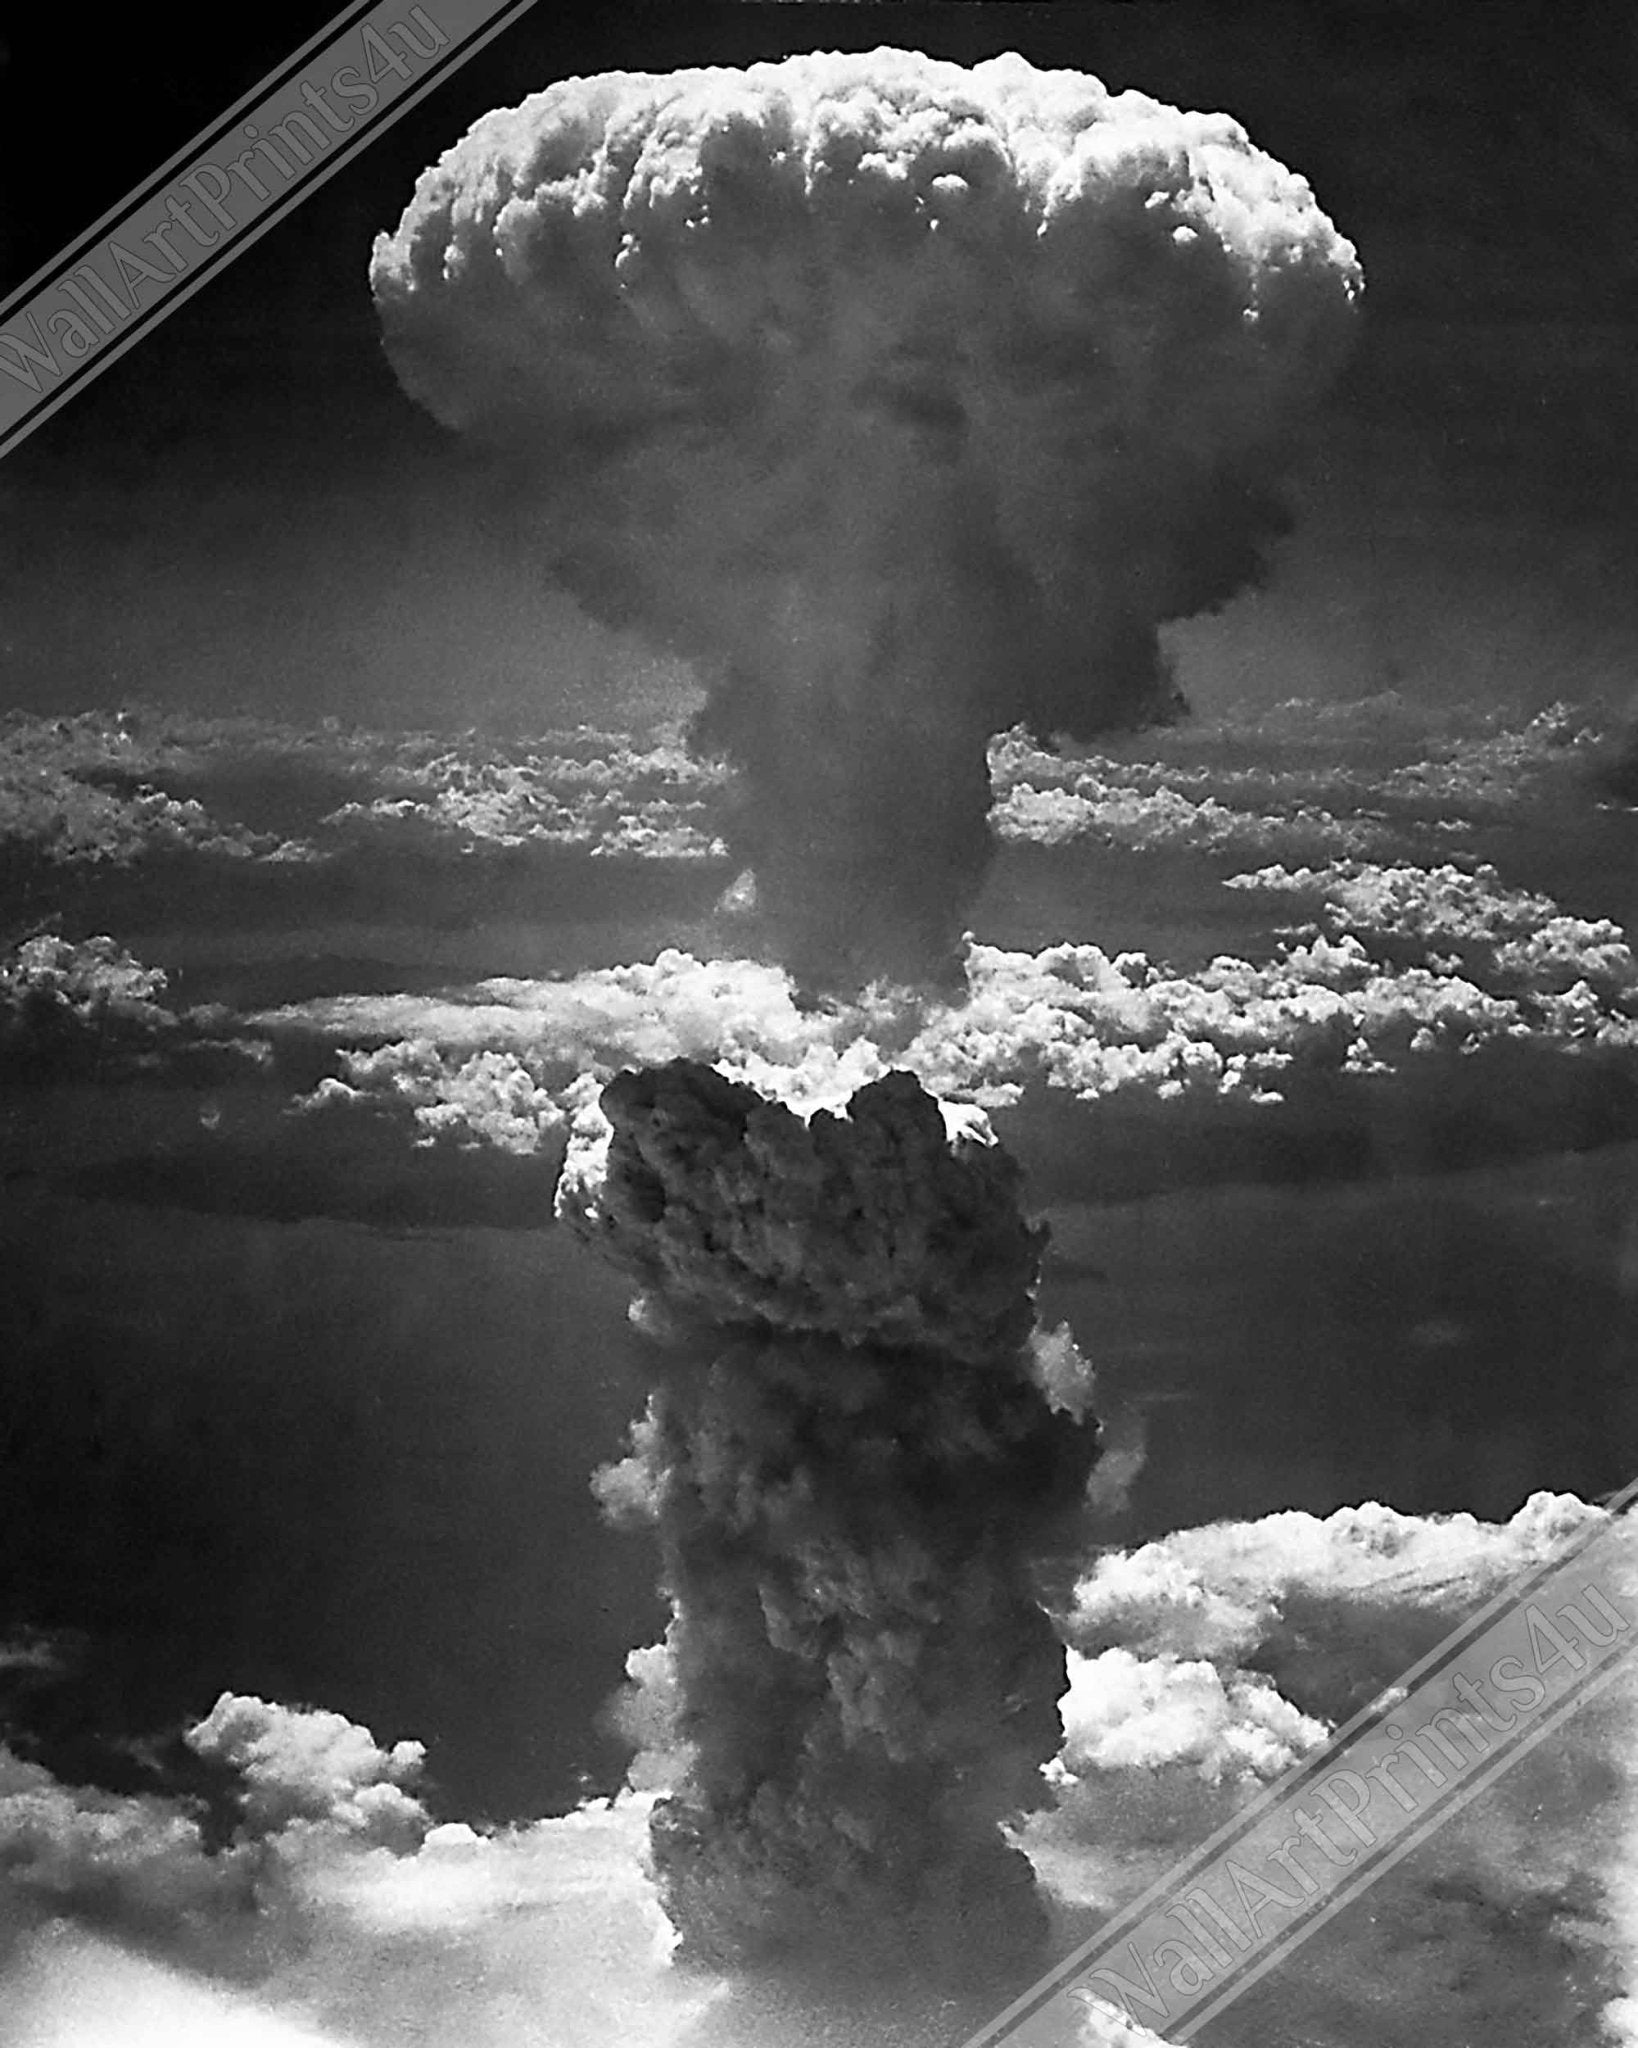 Hiroshima Poster, Hiroshima Nagasaki Mushroom Cloud, Vintage Photo From 1945 Lieutenanat Charles Levy - WallArtPrints4U